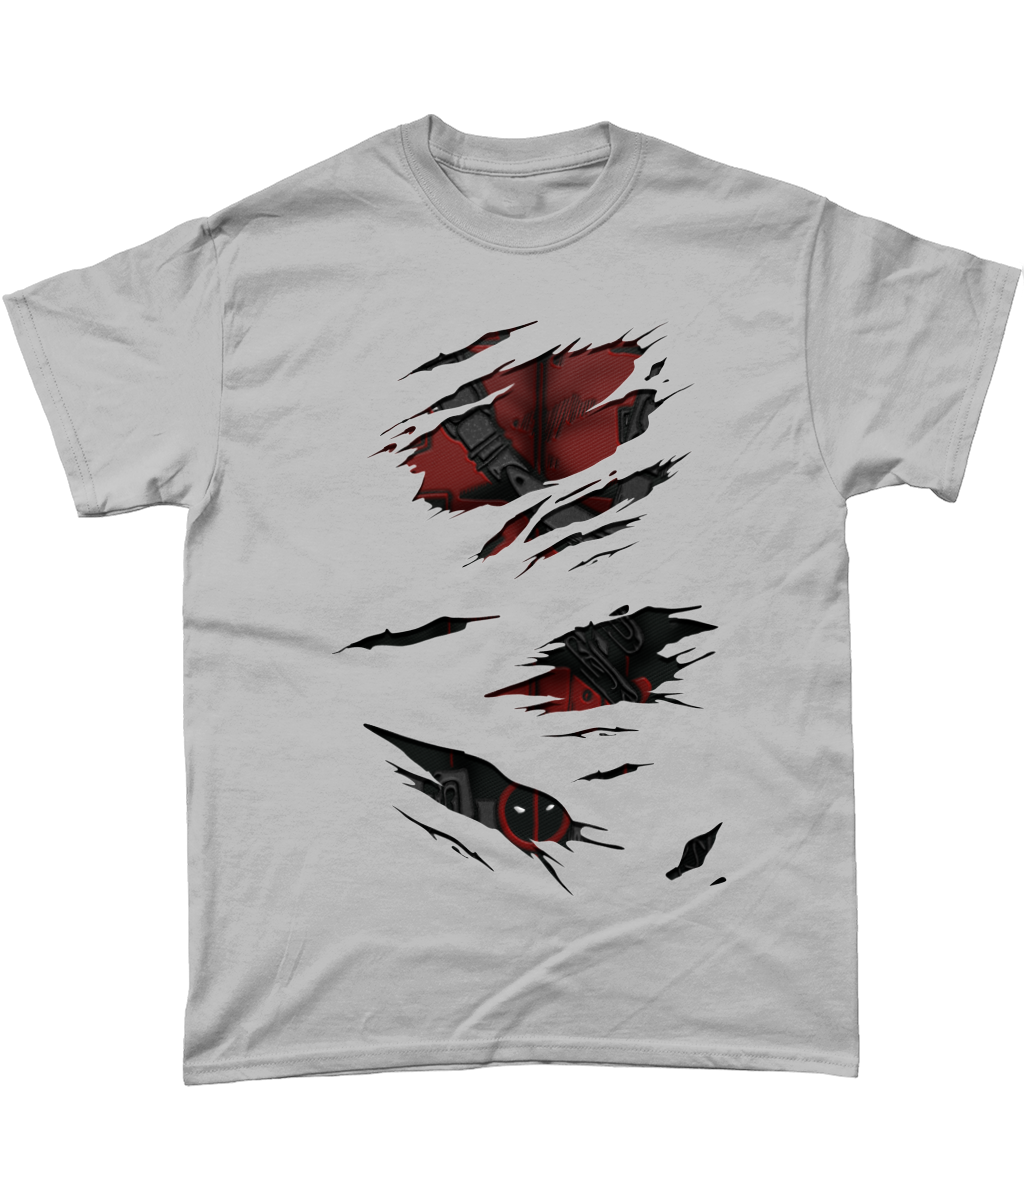 Deadpool Torn T-Shirt